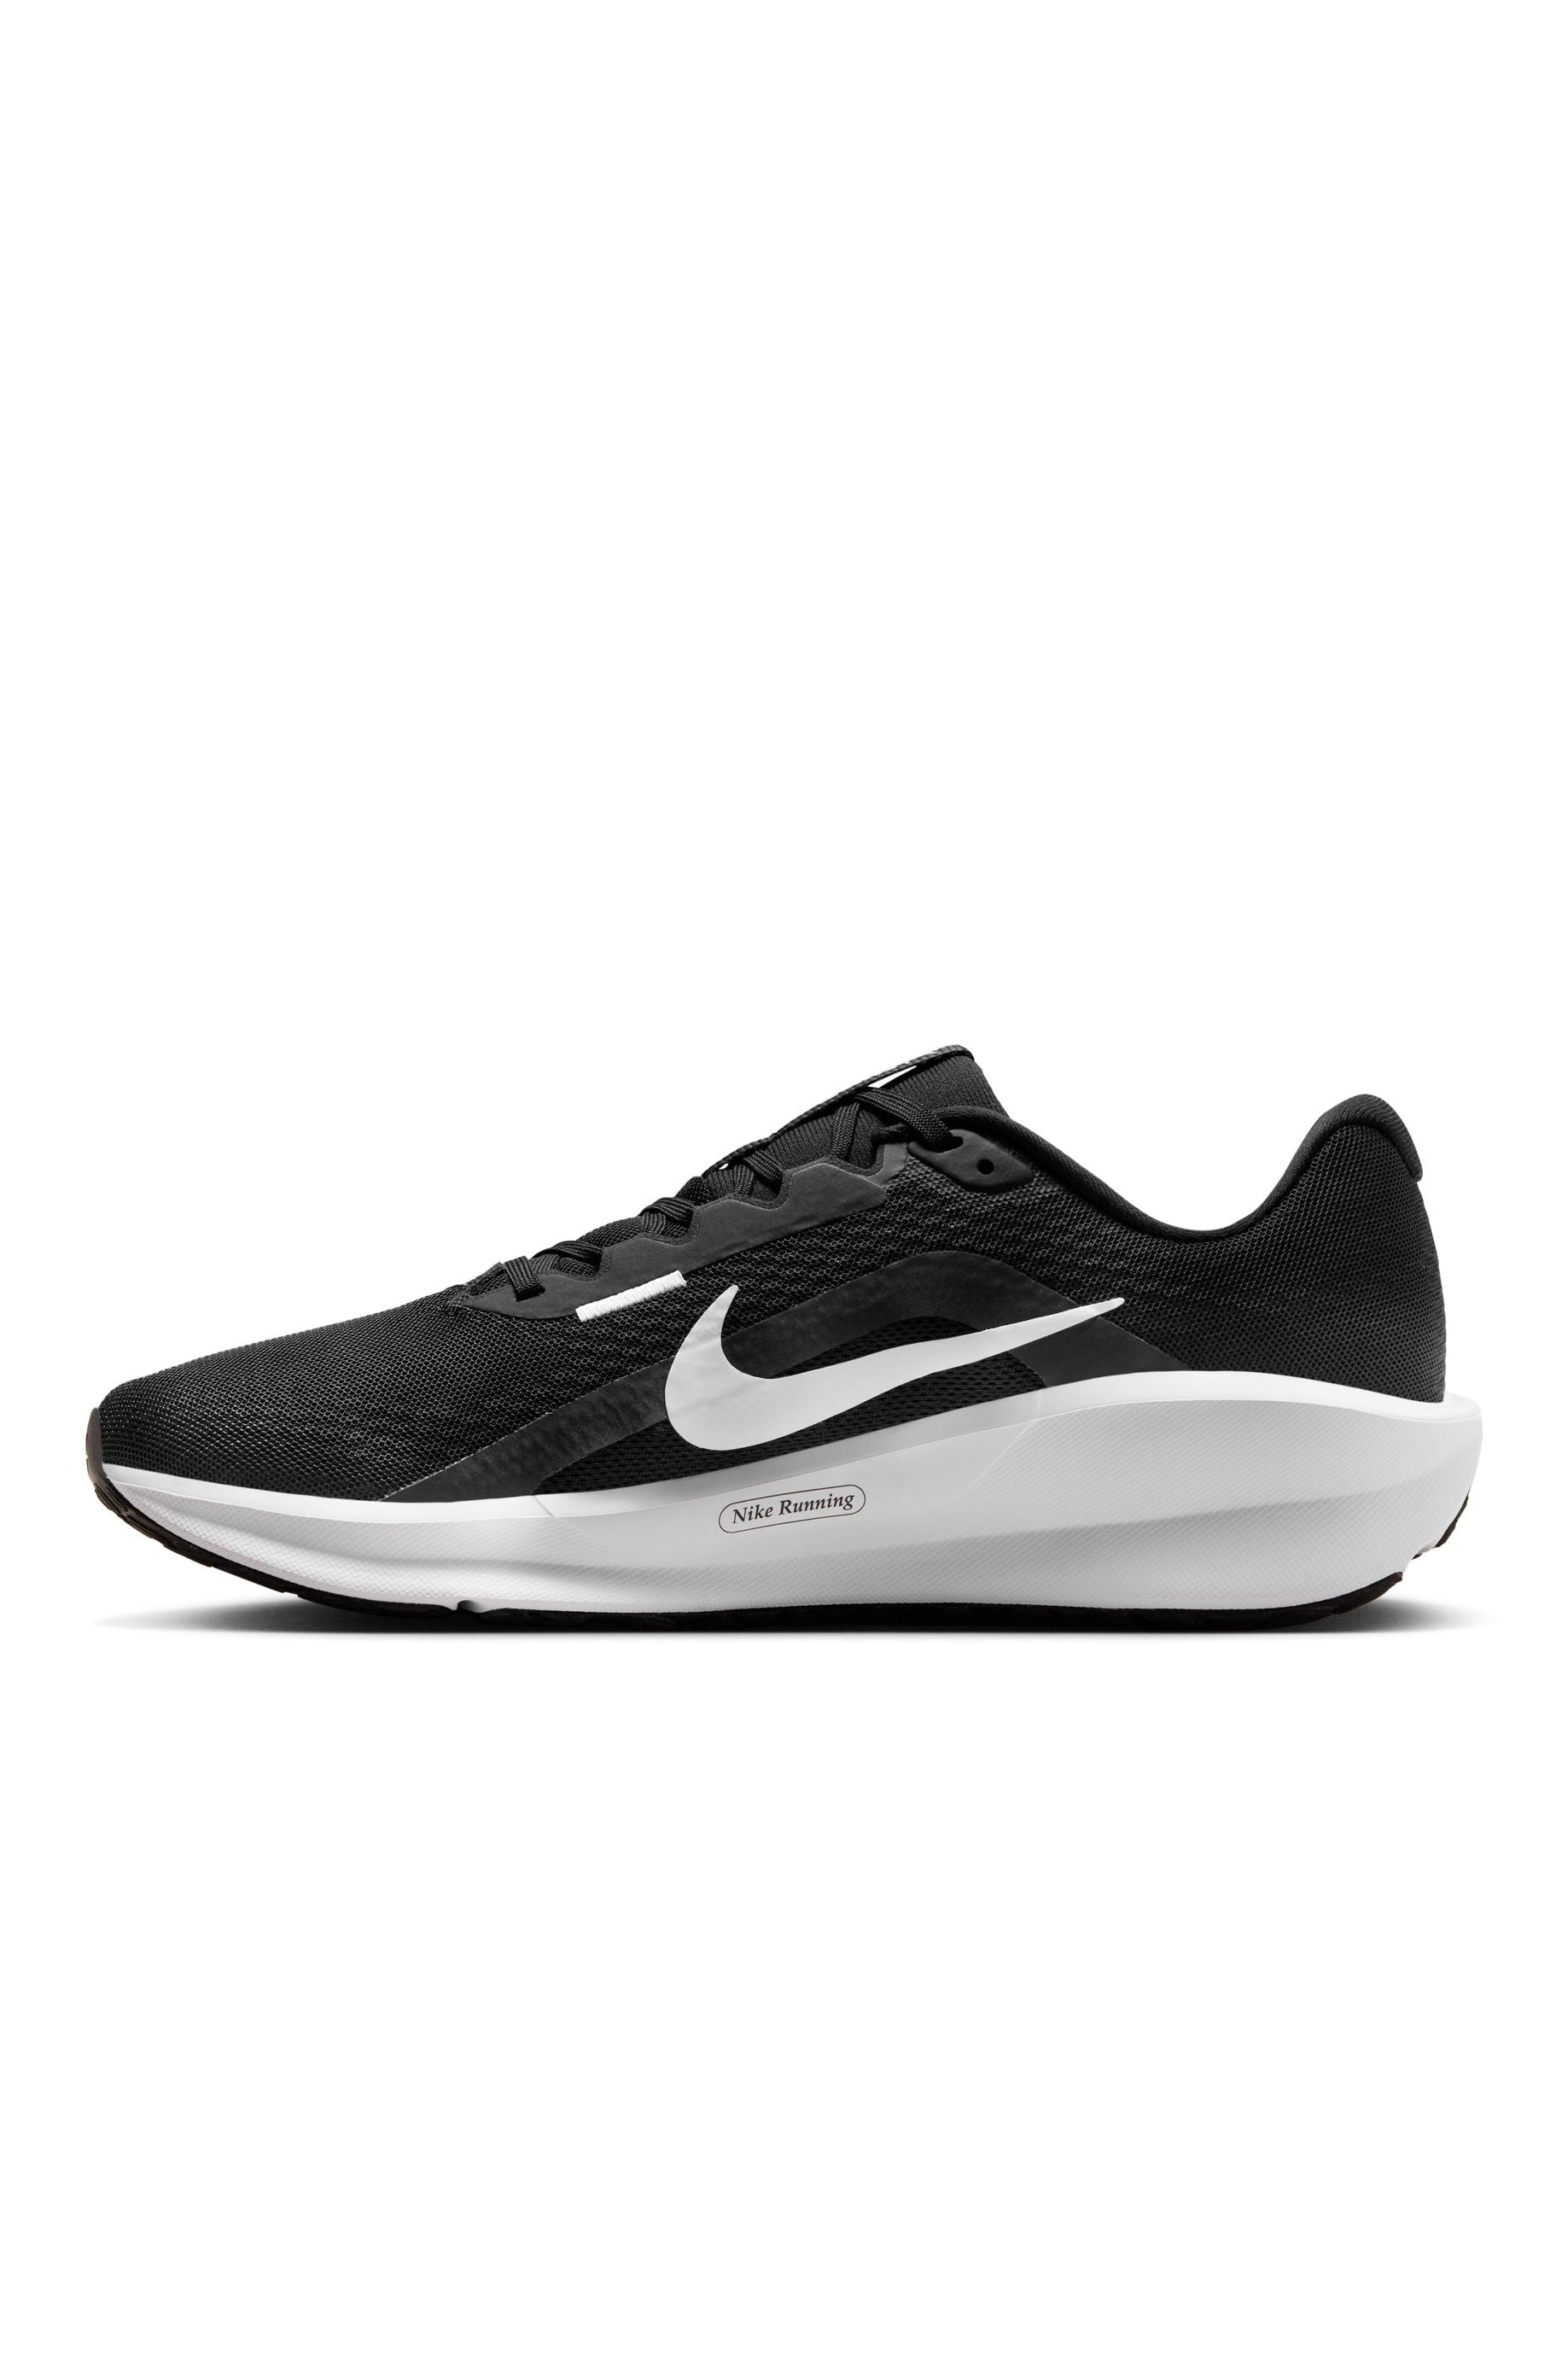 נעלי ספורט לגברים DOWNSHIFTER 13 בצבע שחור ולבן